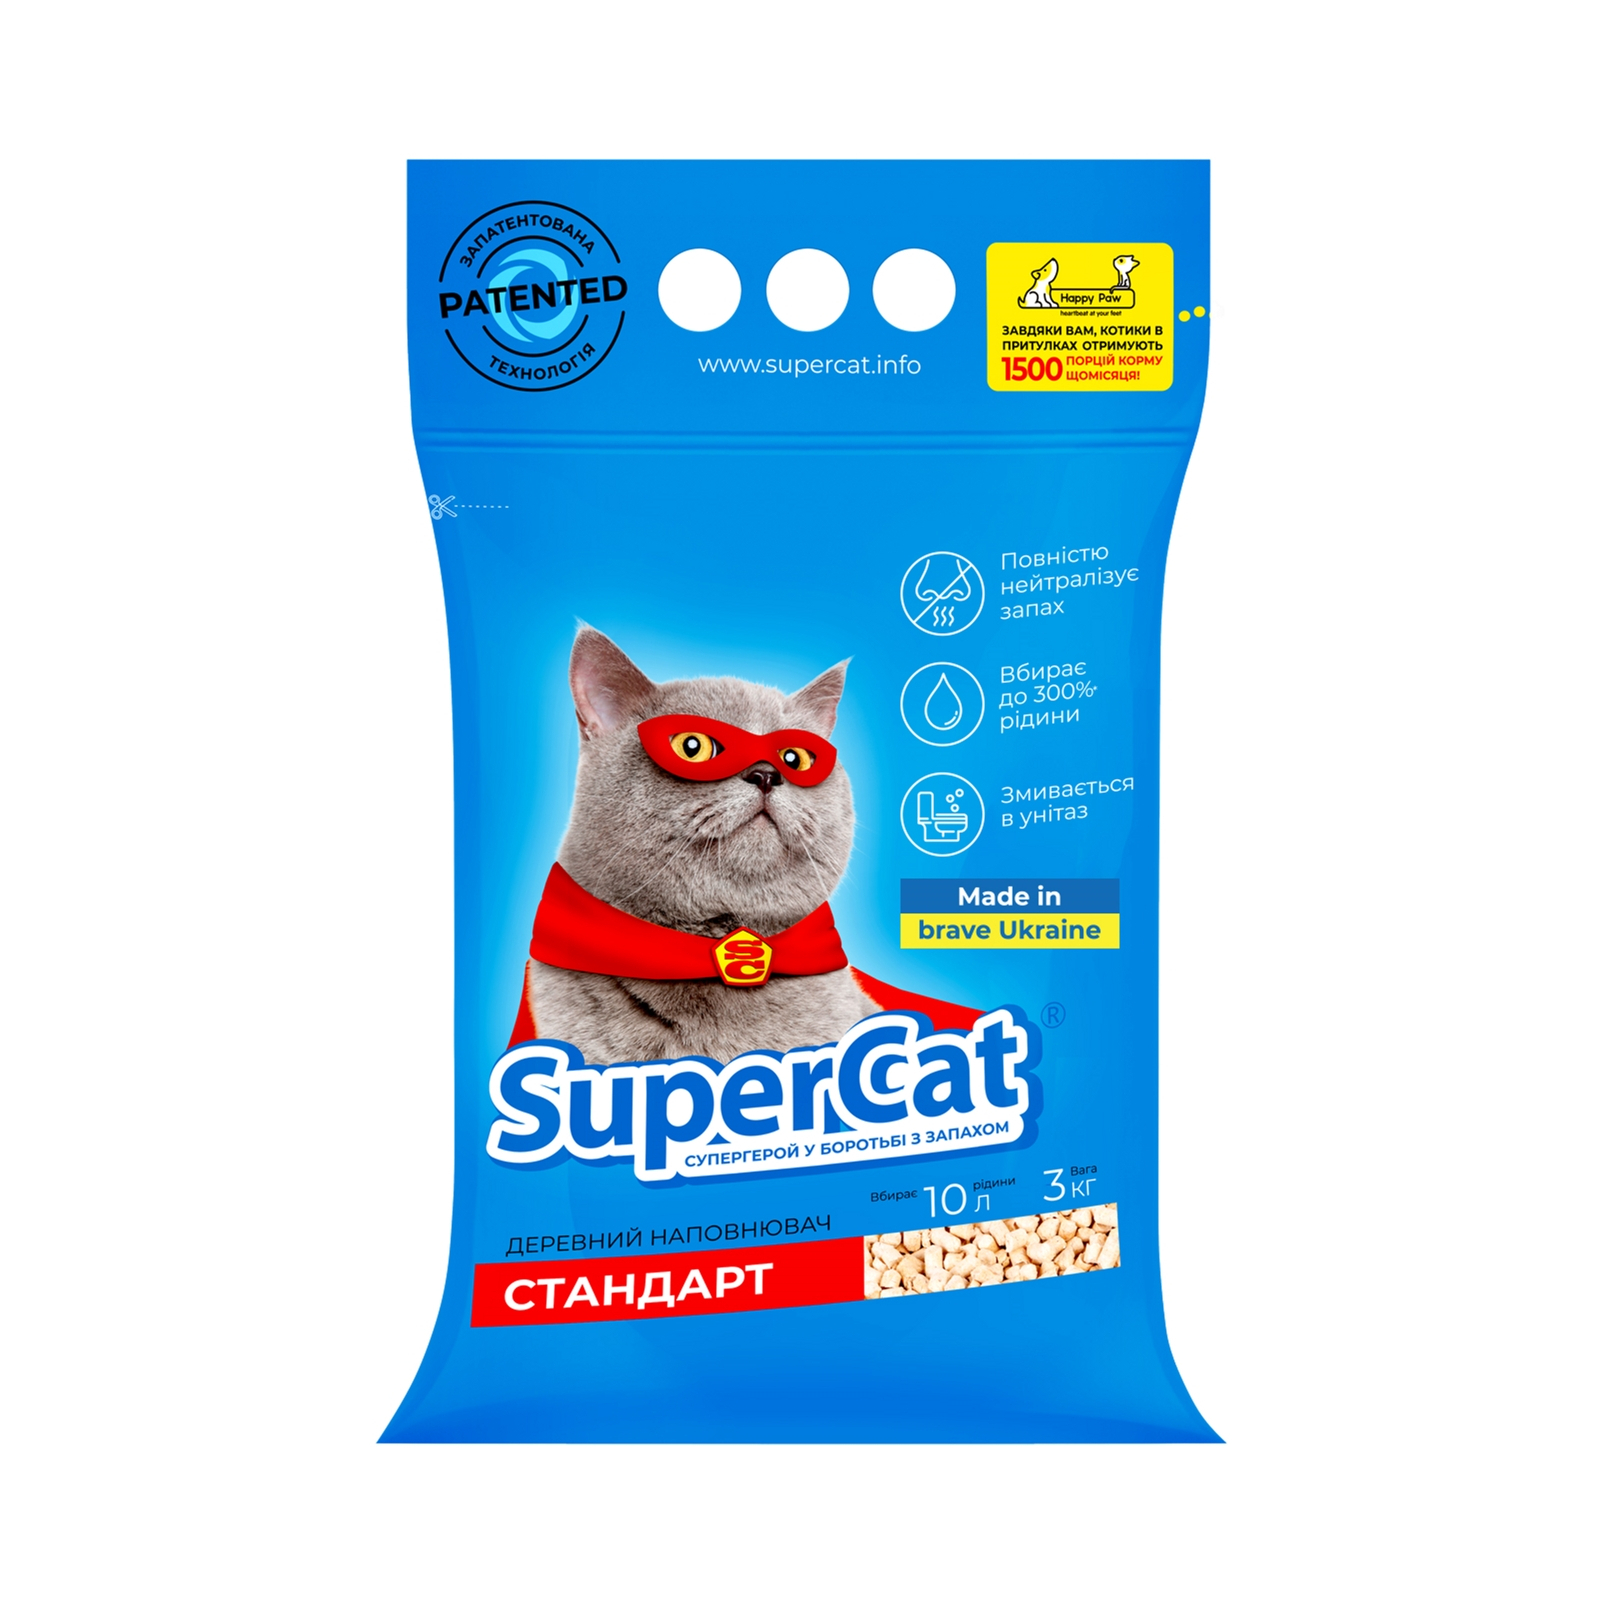 Наполнитель для туалета Super Cat Стандарт Деревянный впитывающий 3 кг (10 л) (3550)